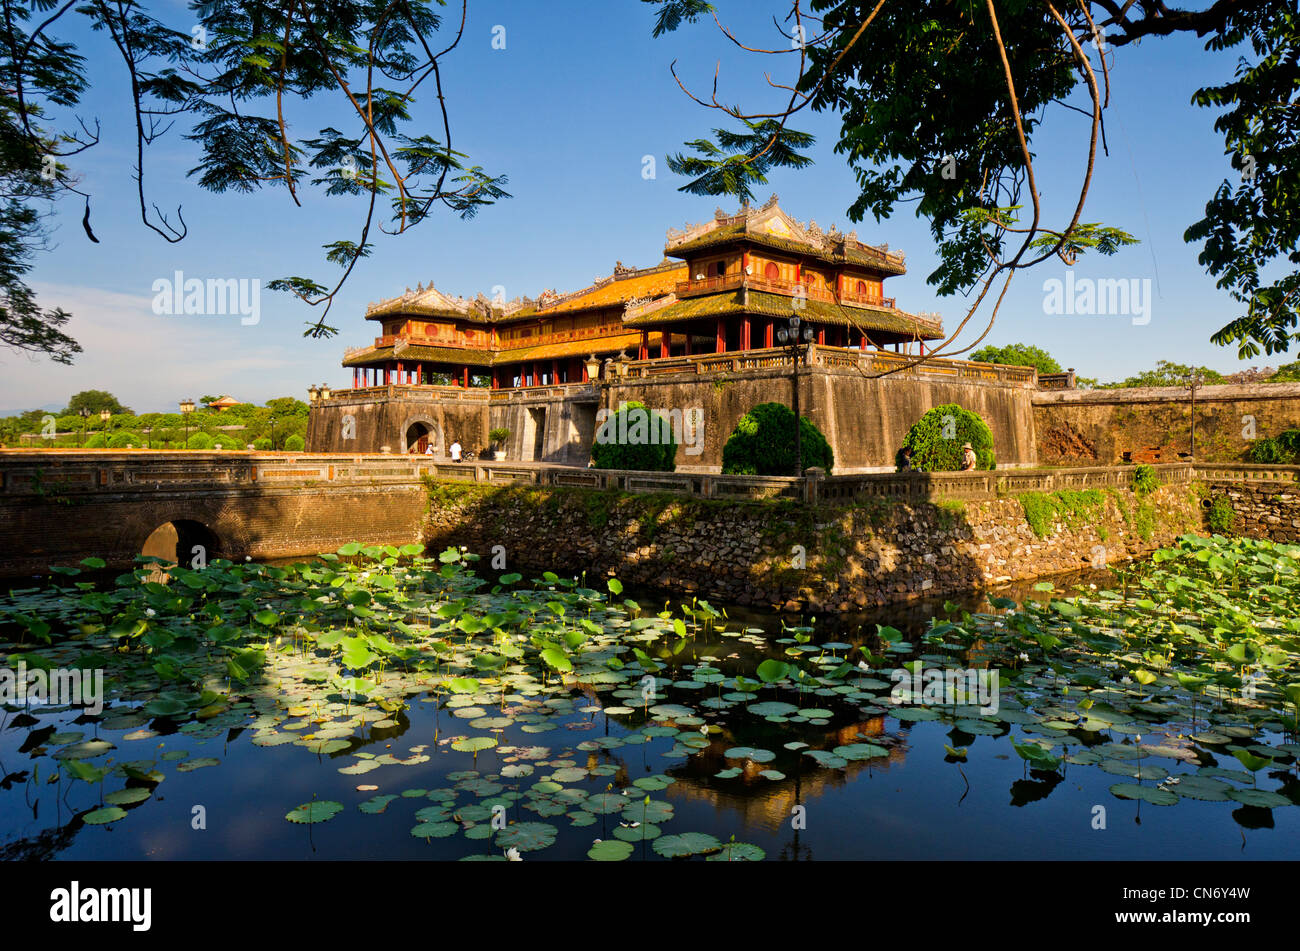 Ciudad Imperial, Hue Vietnam, con fosos y lirios de agua Foto de stock